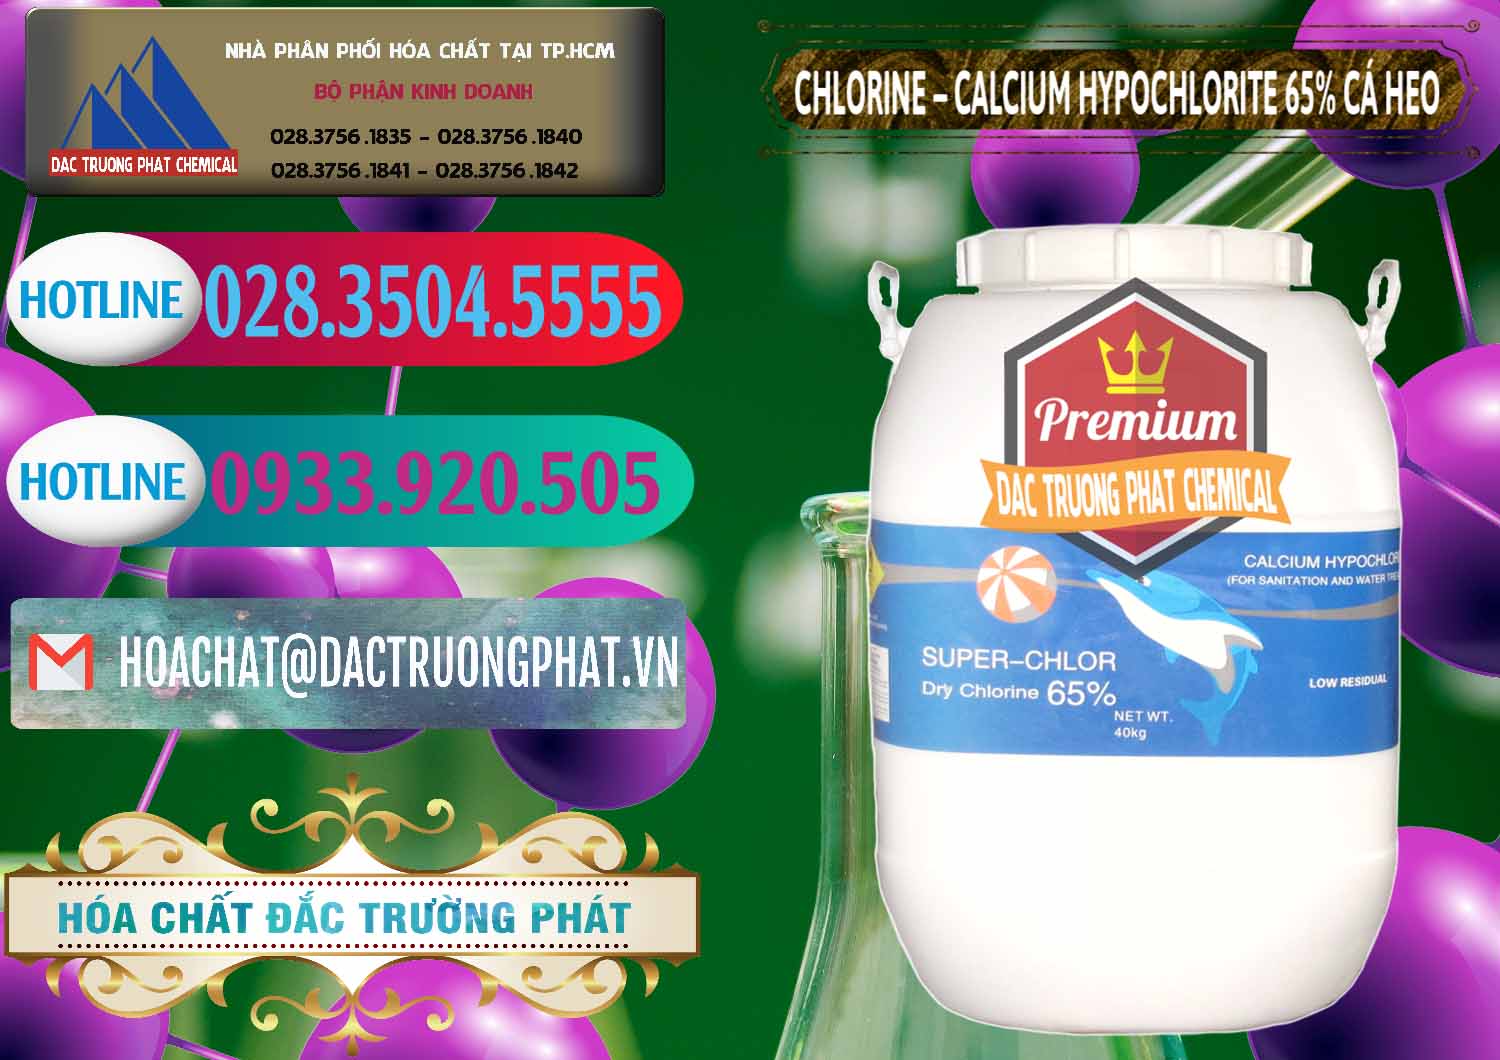 Công ty chuyên phân phối _ bán Clorin - Chlorine Cá Heo 65% Trung Quốc China - 0053 - Đơn vị chuyên cung cấp & kinh doanh hóa chất tại TP.HCM - truongphat.vn